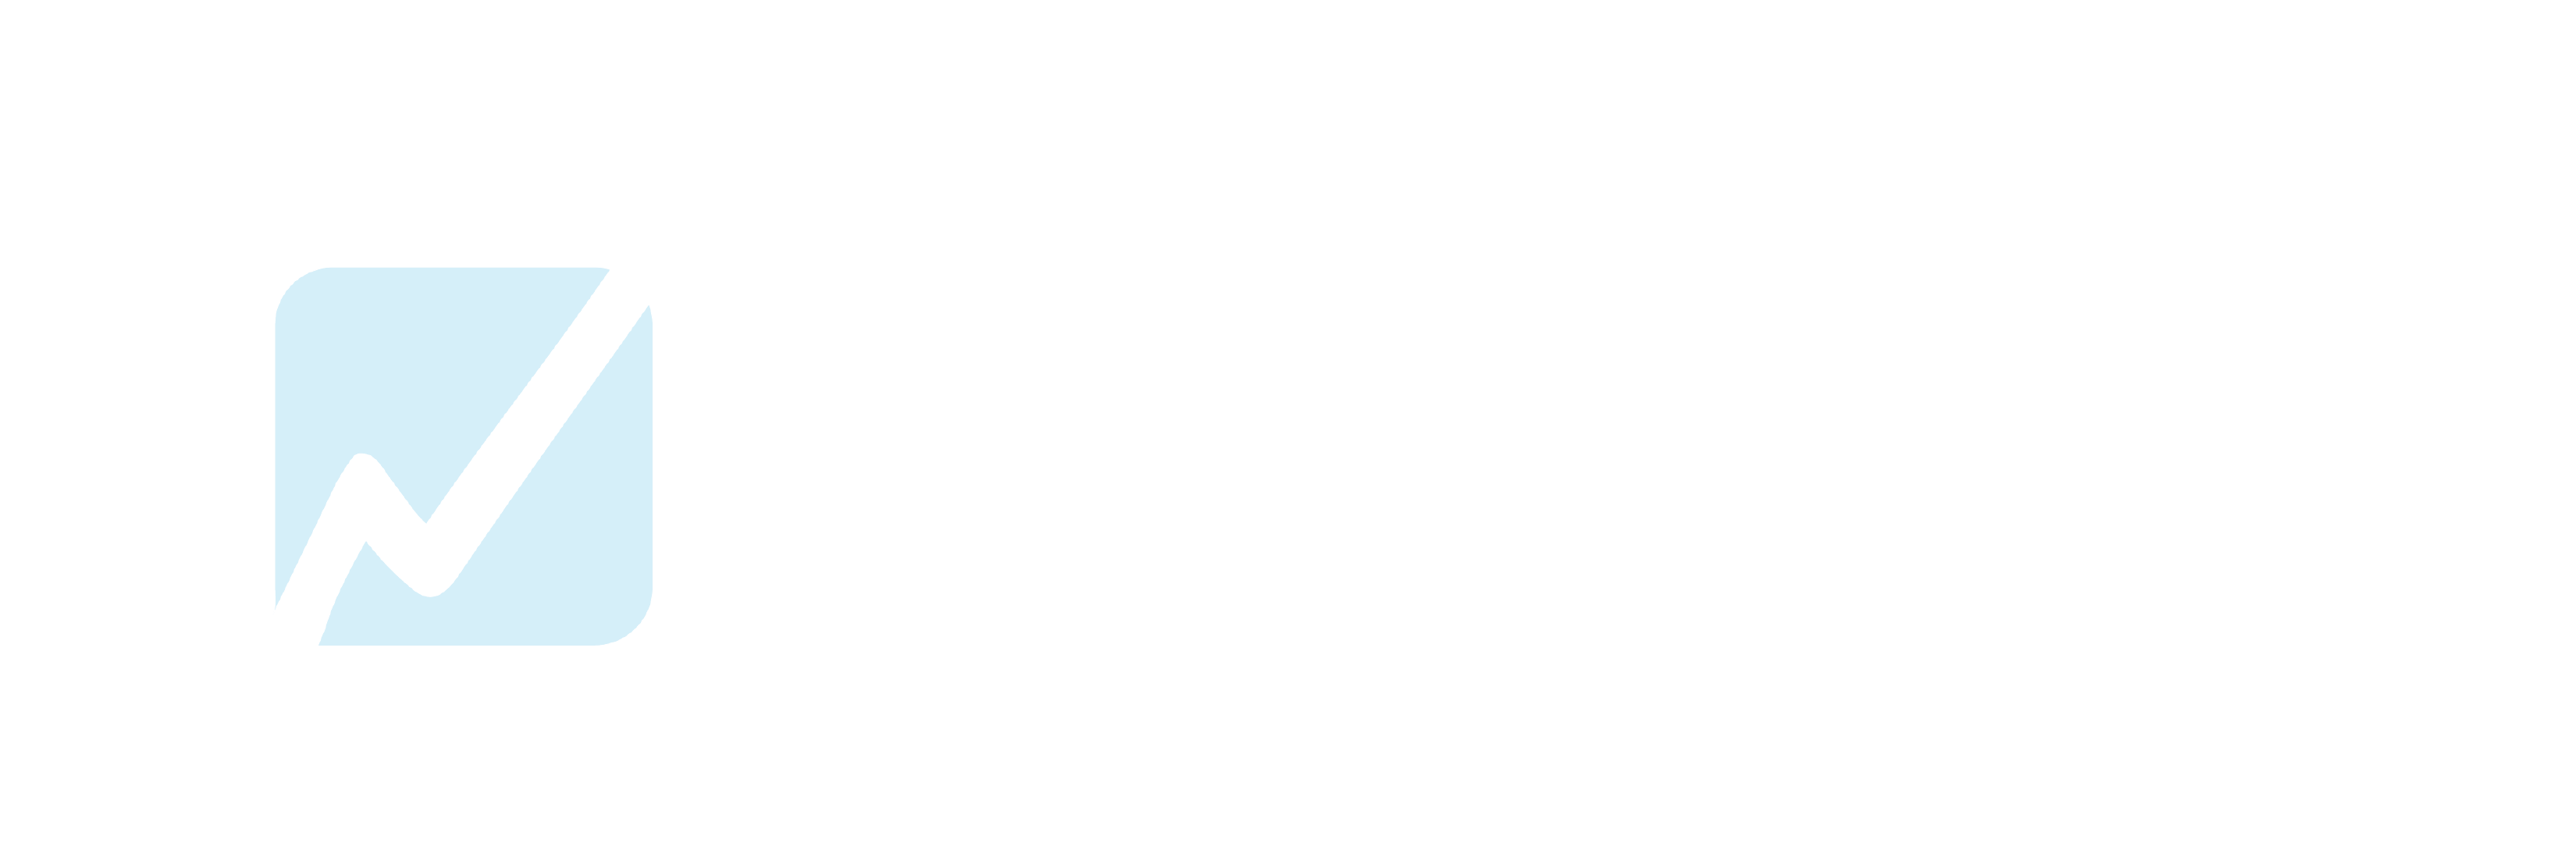 WhyFire.com